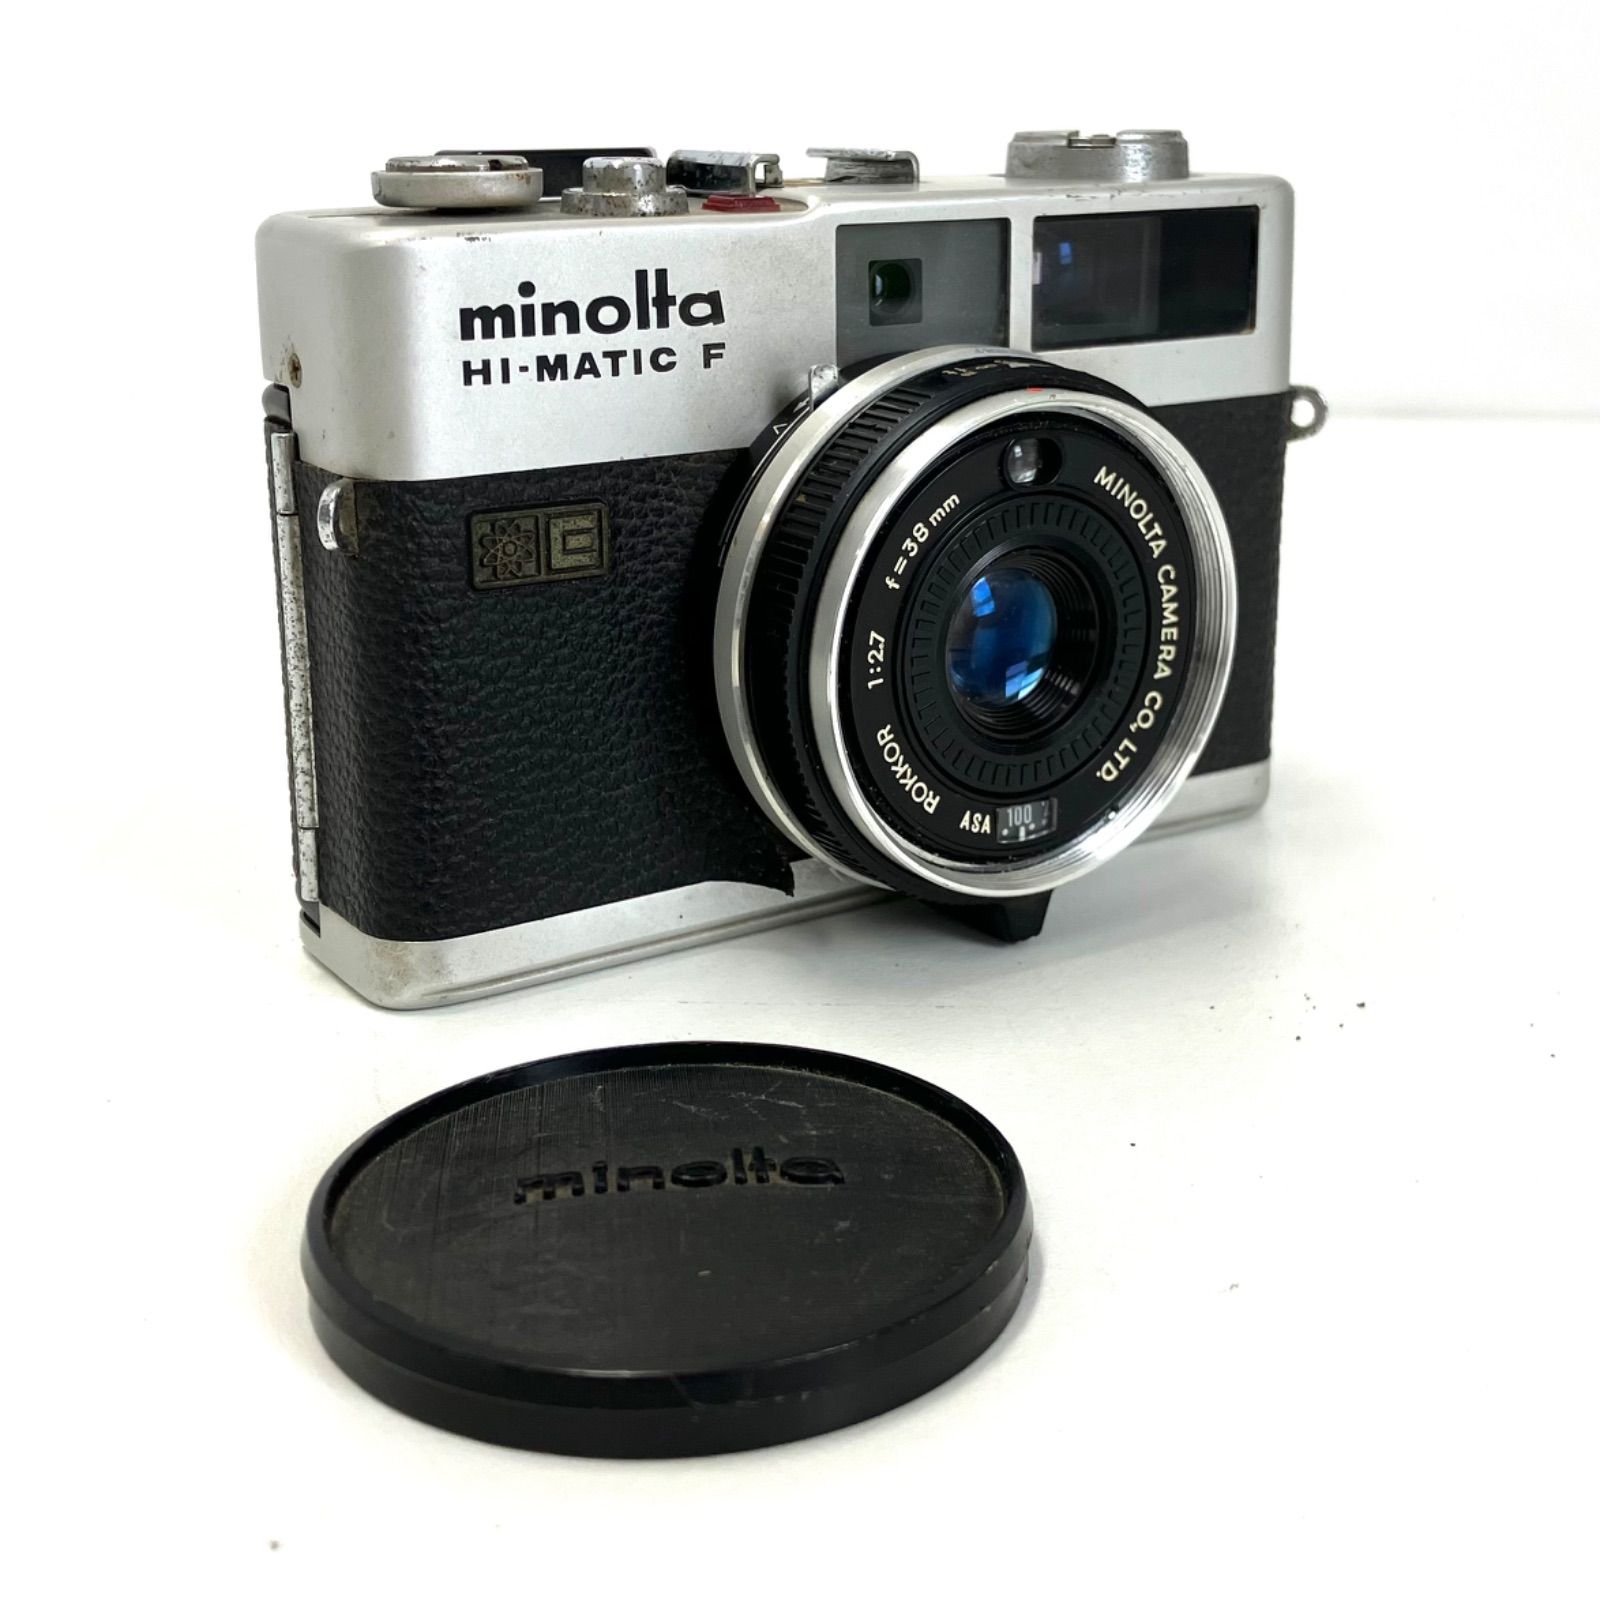 MINOLTA ミノルタ HI-MATIC F - フィルムカメラ